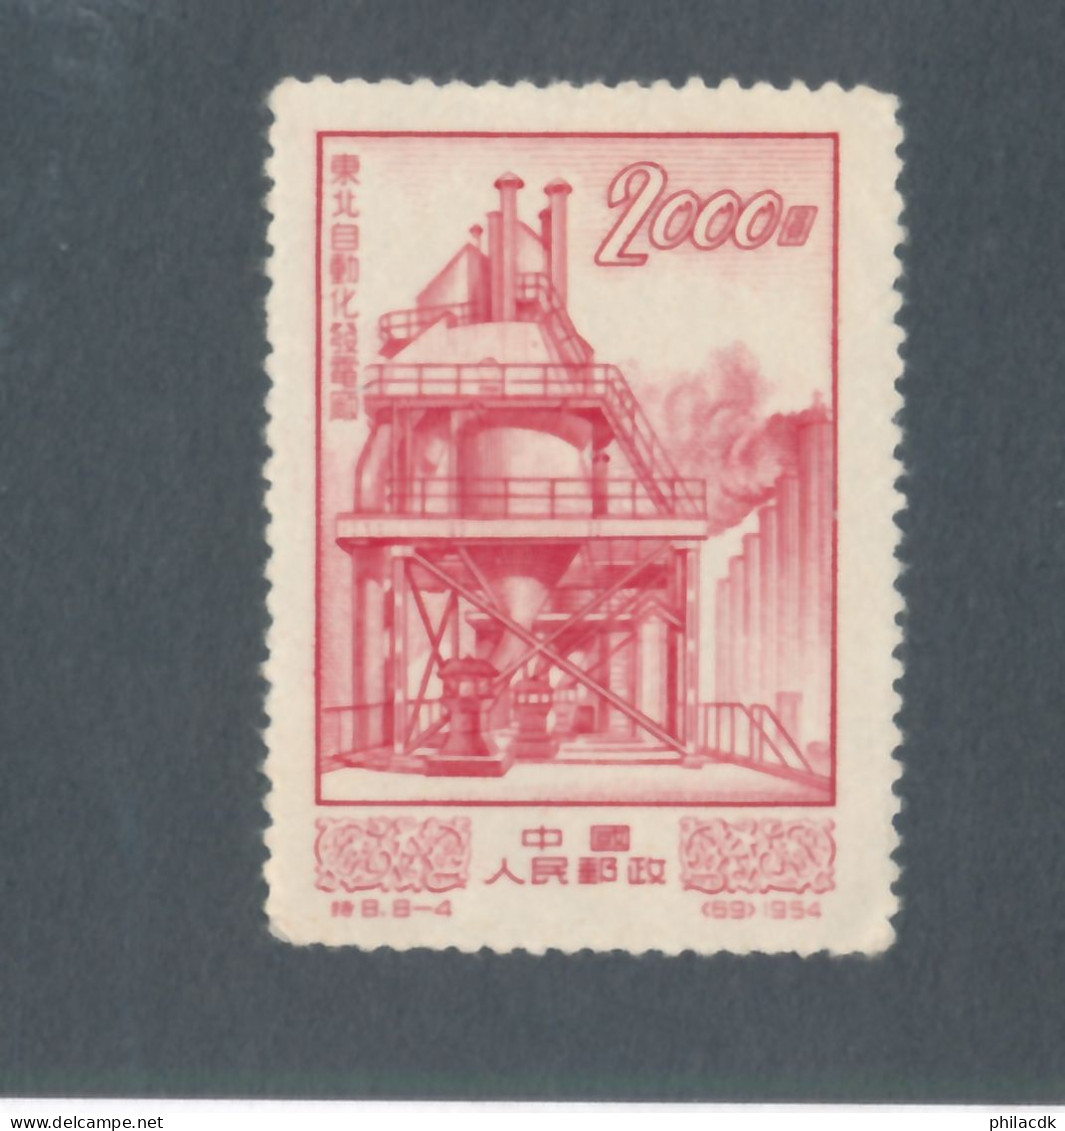 CHINE/CHINA - N° 1006 NEUF - 1954 - Unused Stamps